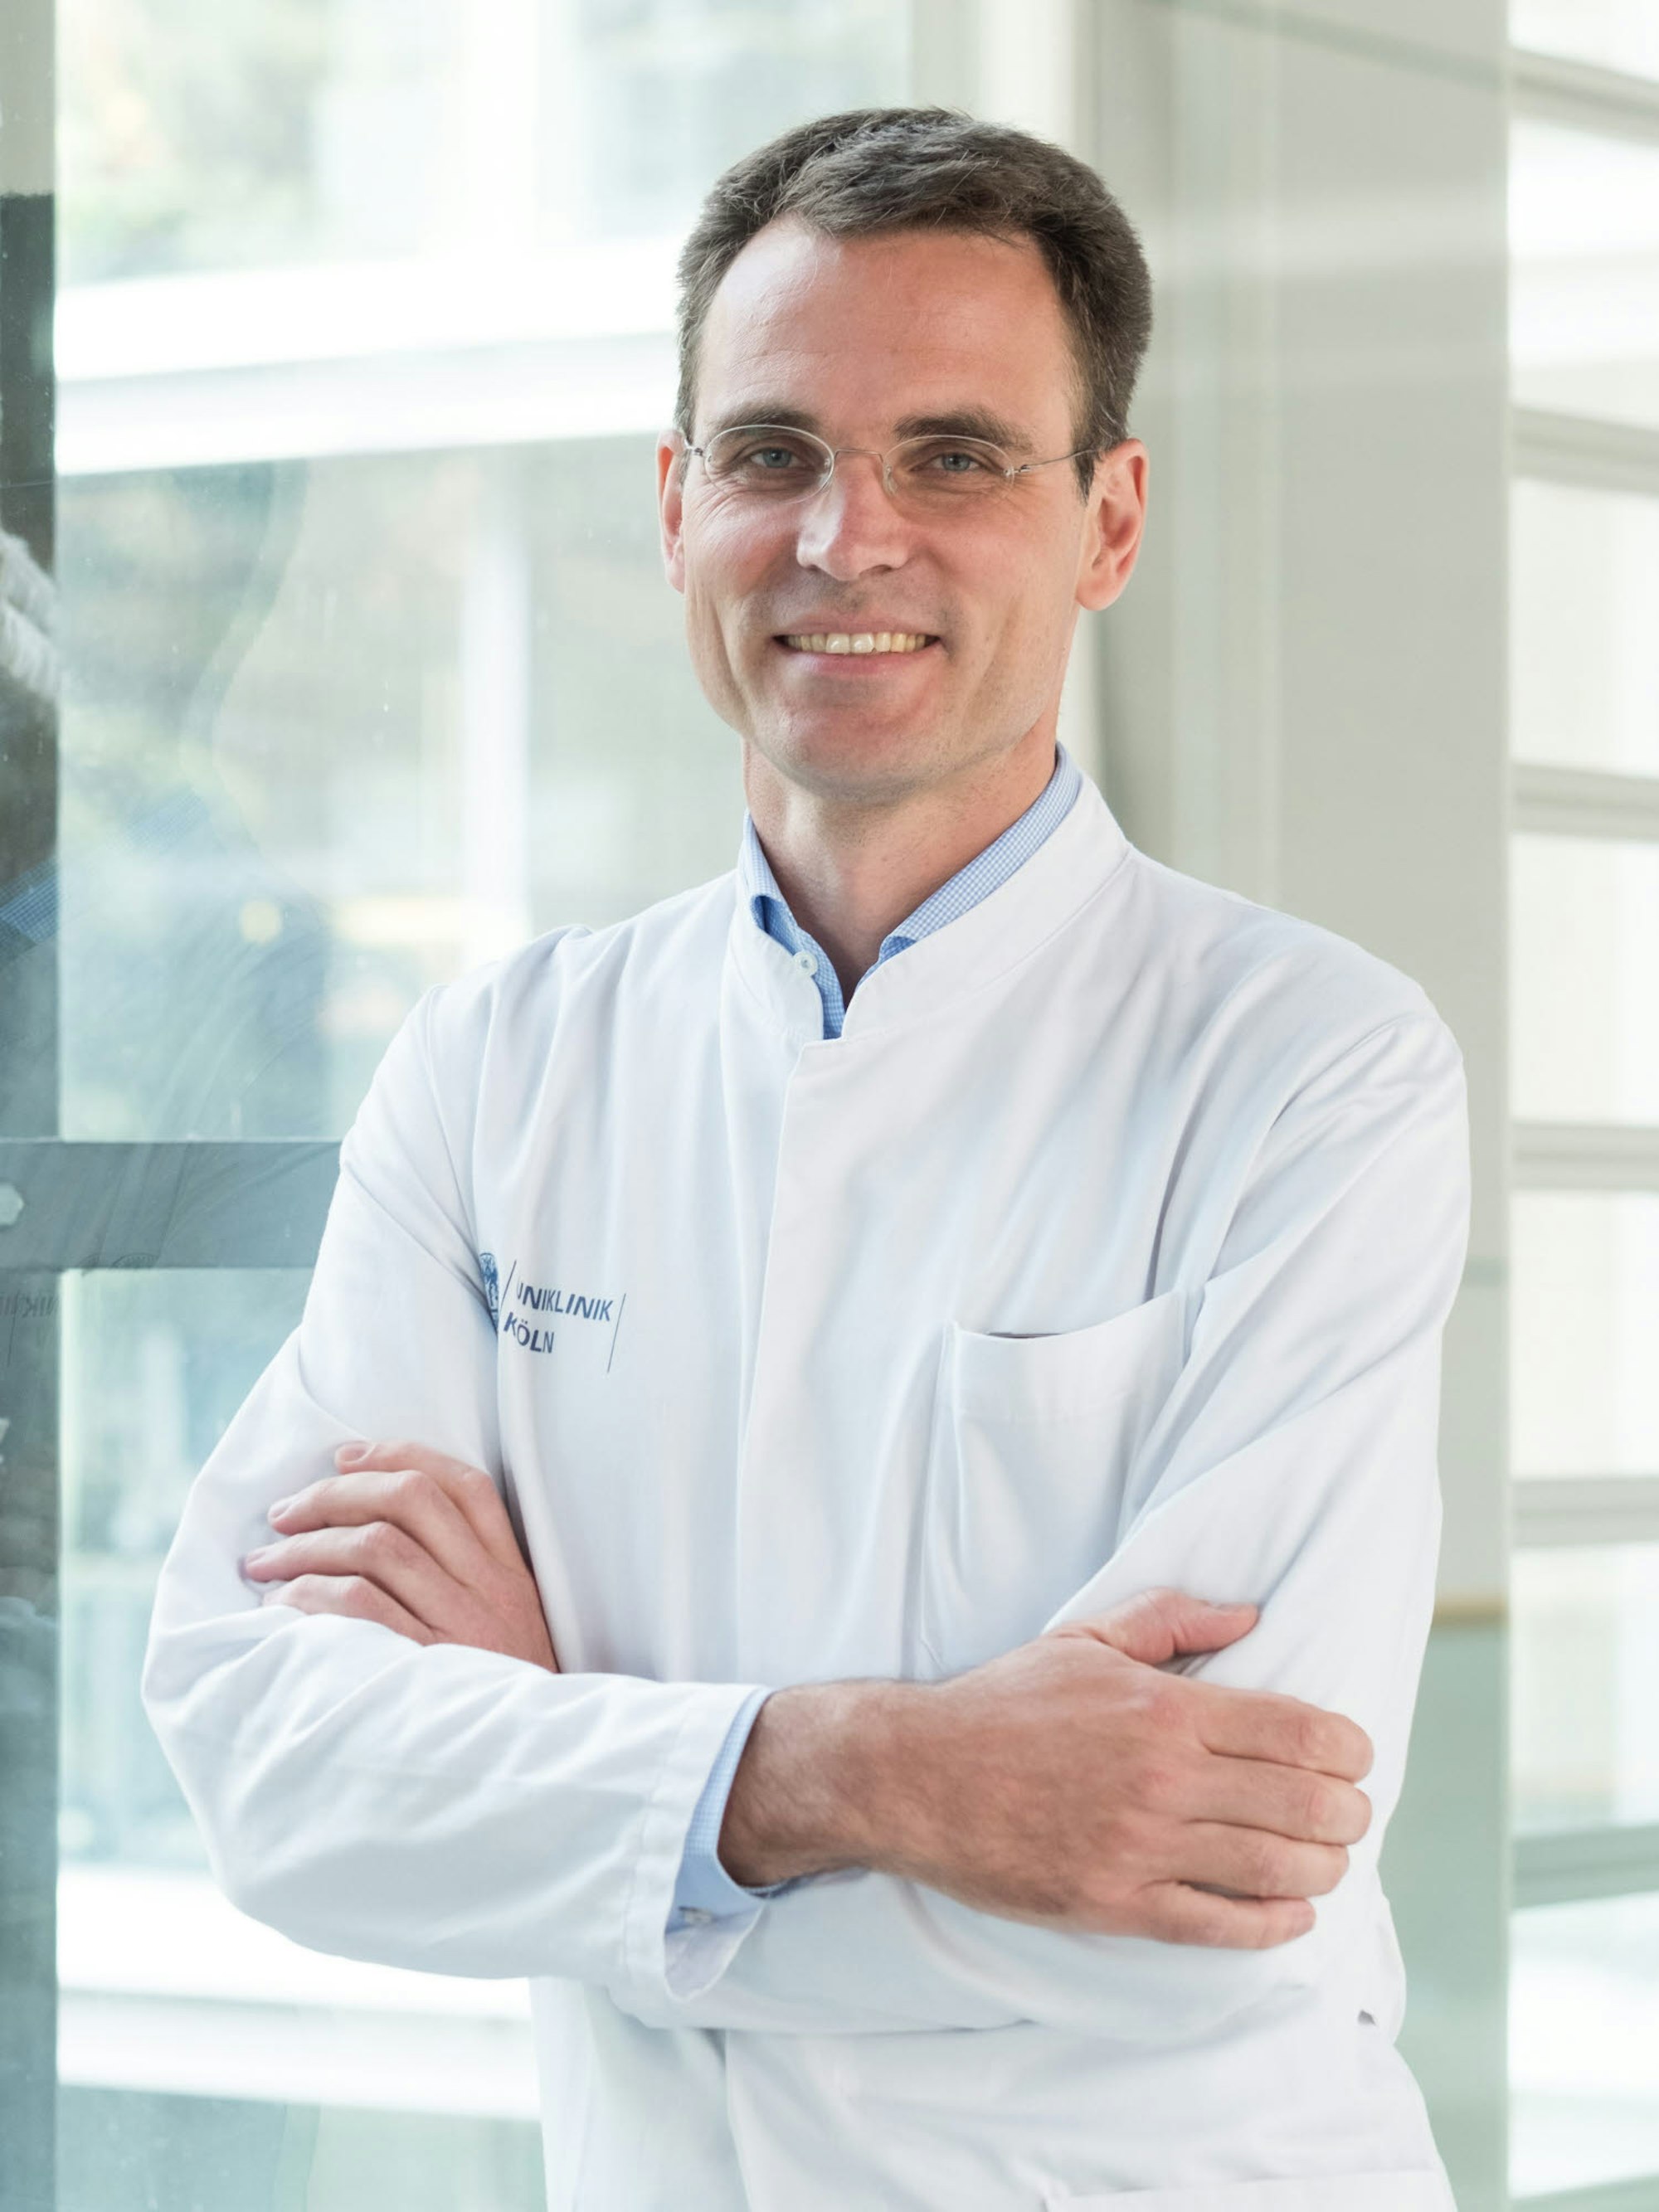 Professor Dr. Stephan Baldus ist Direktor der Klinik III für Innere Medizin am Universitätsklinikum Köln. Außerdem ist er Präsident der Deutschen Gesellschaft für Kardiologie – Herz- und Kreislaufforschung e. V.